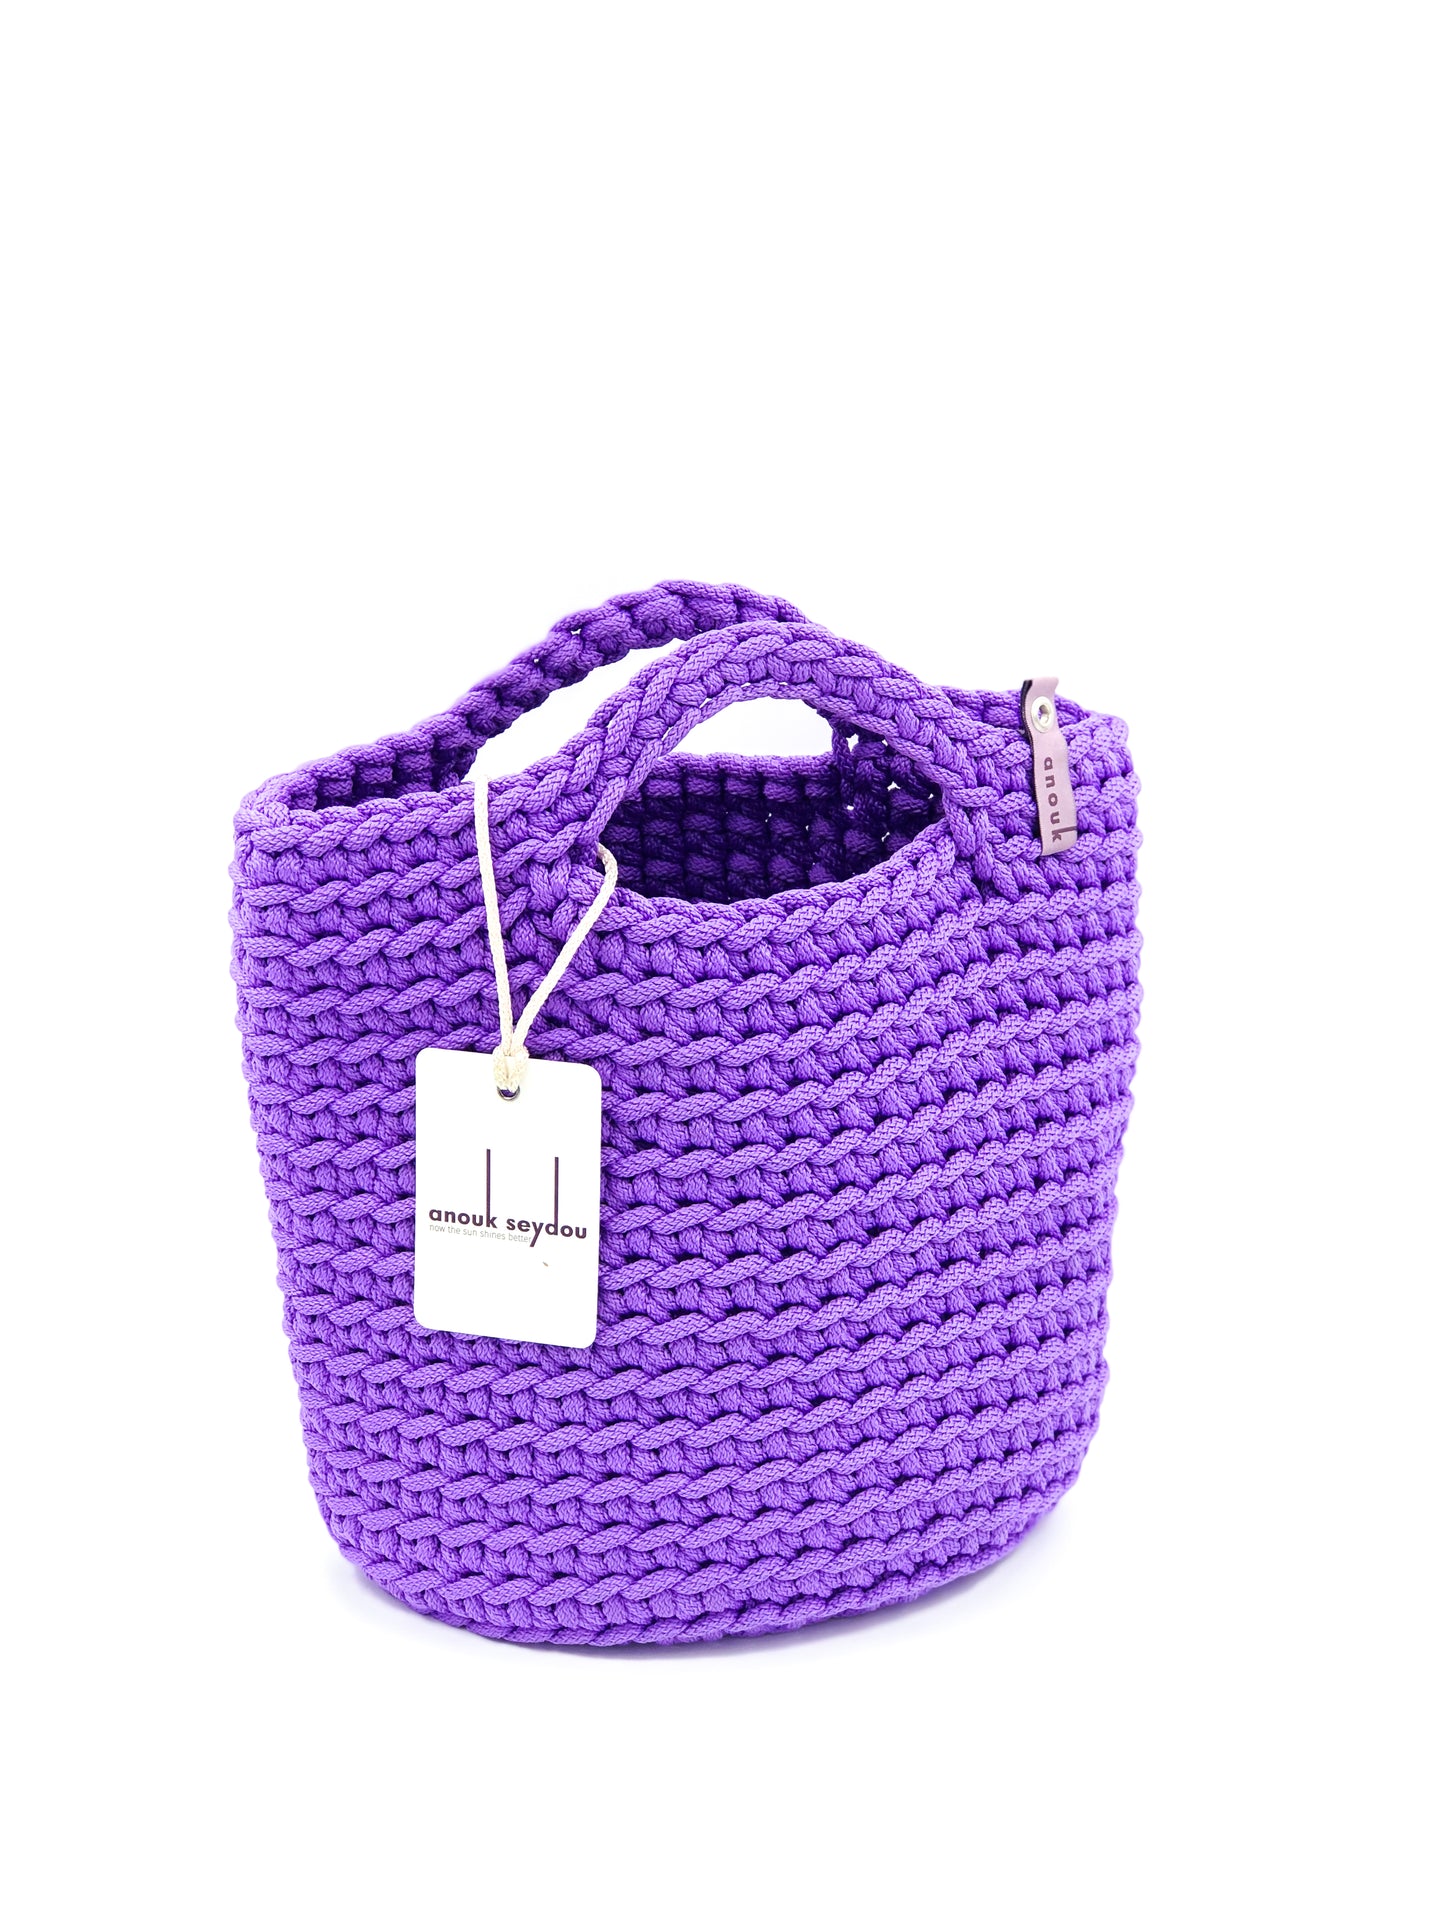 Tote Bag Scandinavian Style Royal Purple Size MINI